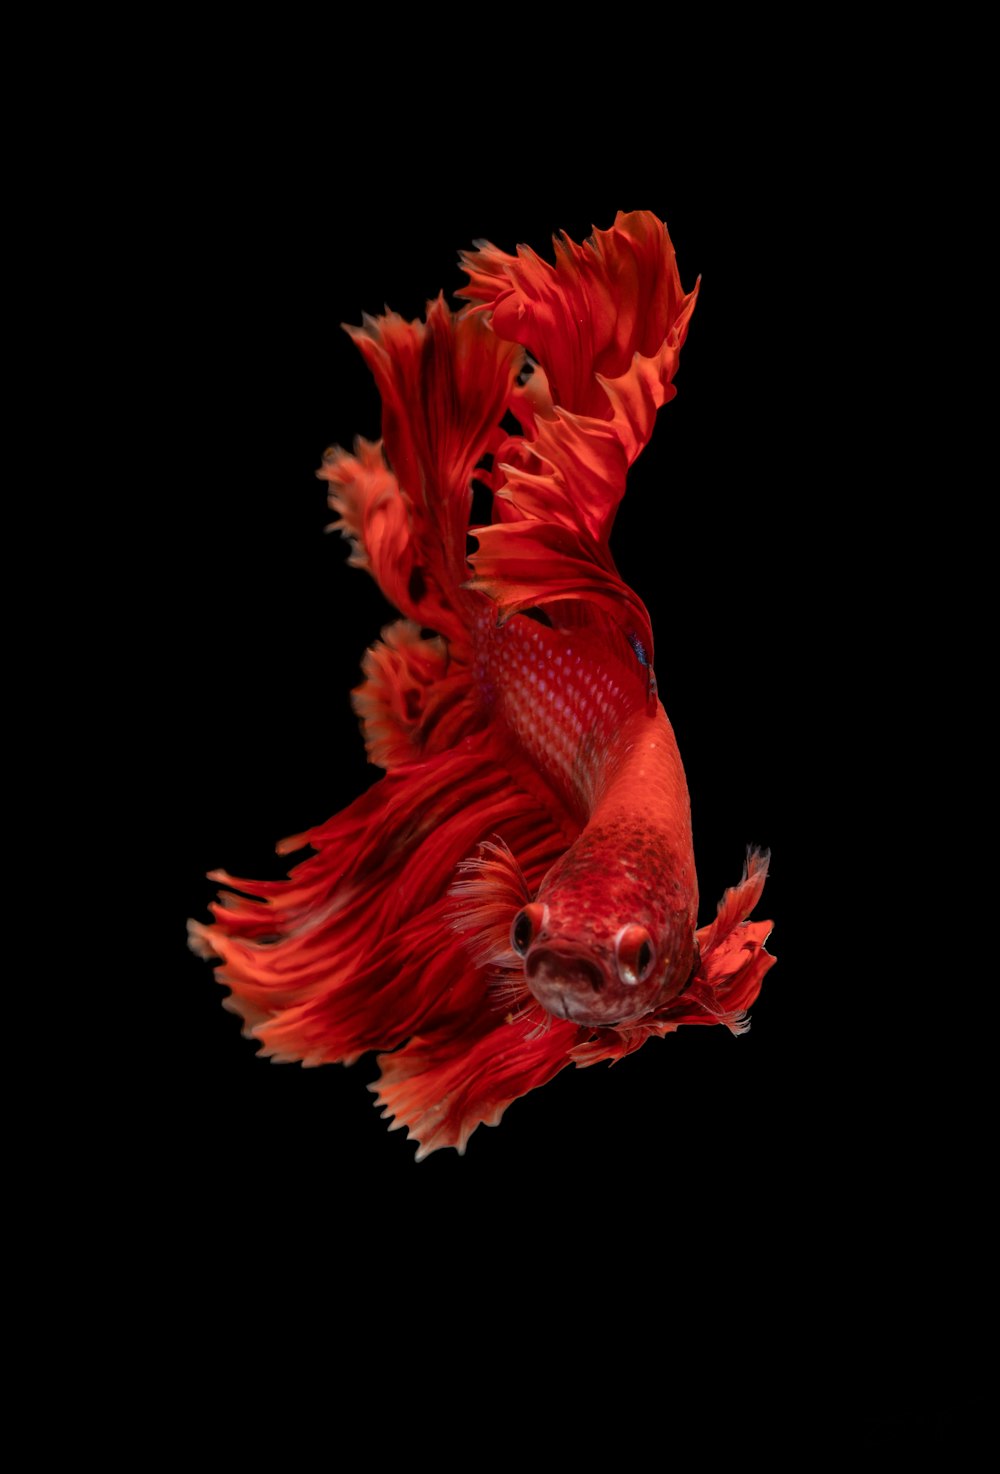 pesce combattente siamese rosso